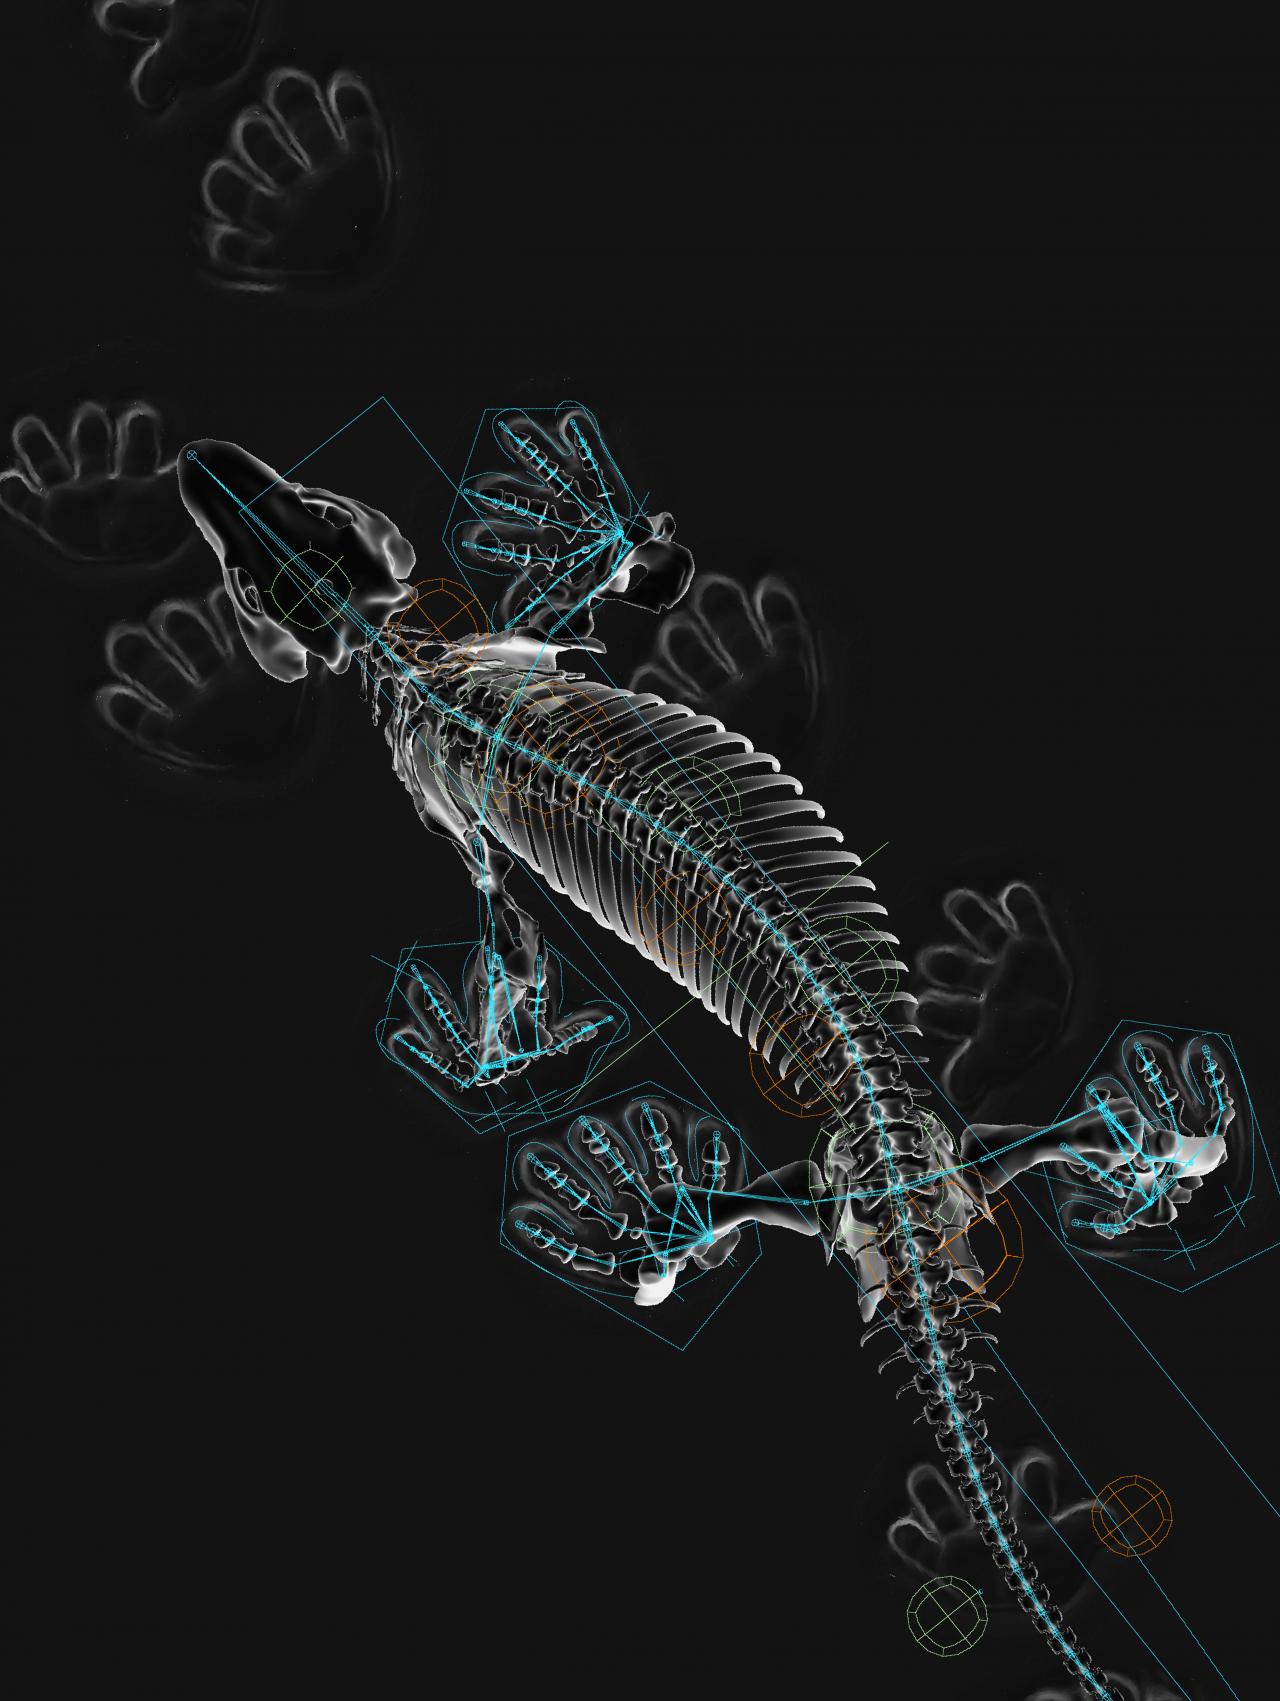 Das digital illustrierte Skelett eines reptilienartigen Tiers ist auf schwarzem Grund zu sehen.